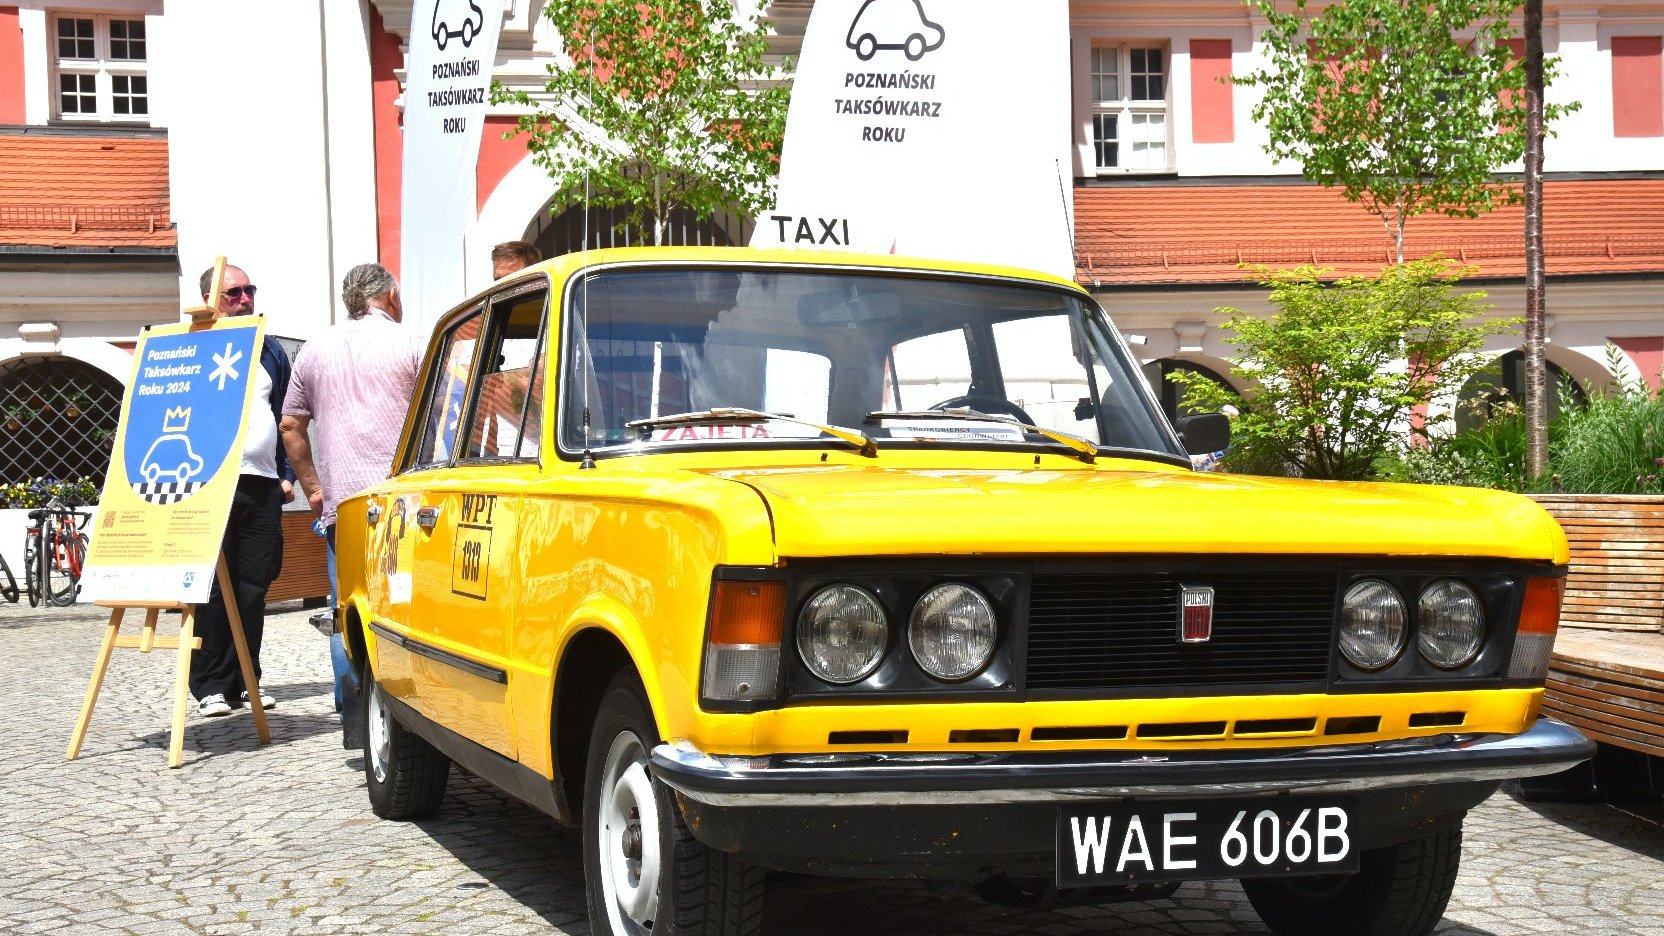 Zdjęcie przedstawia żółtą taksówkę znana z serialu Zmiennicy.